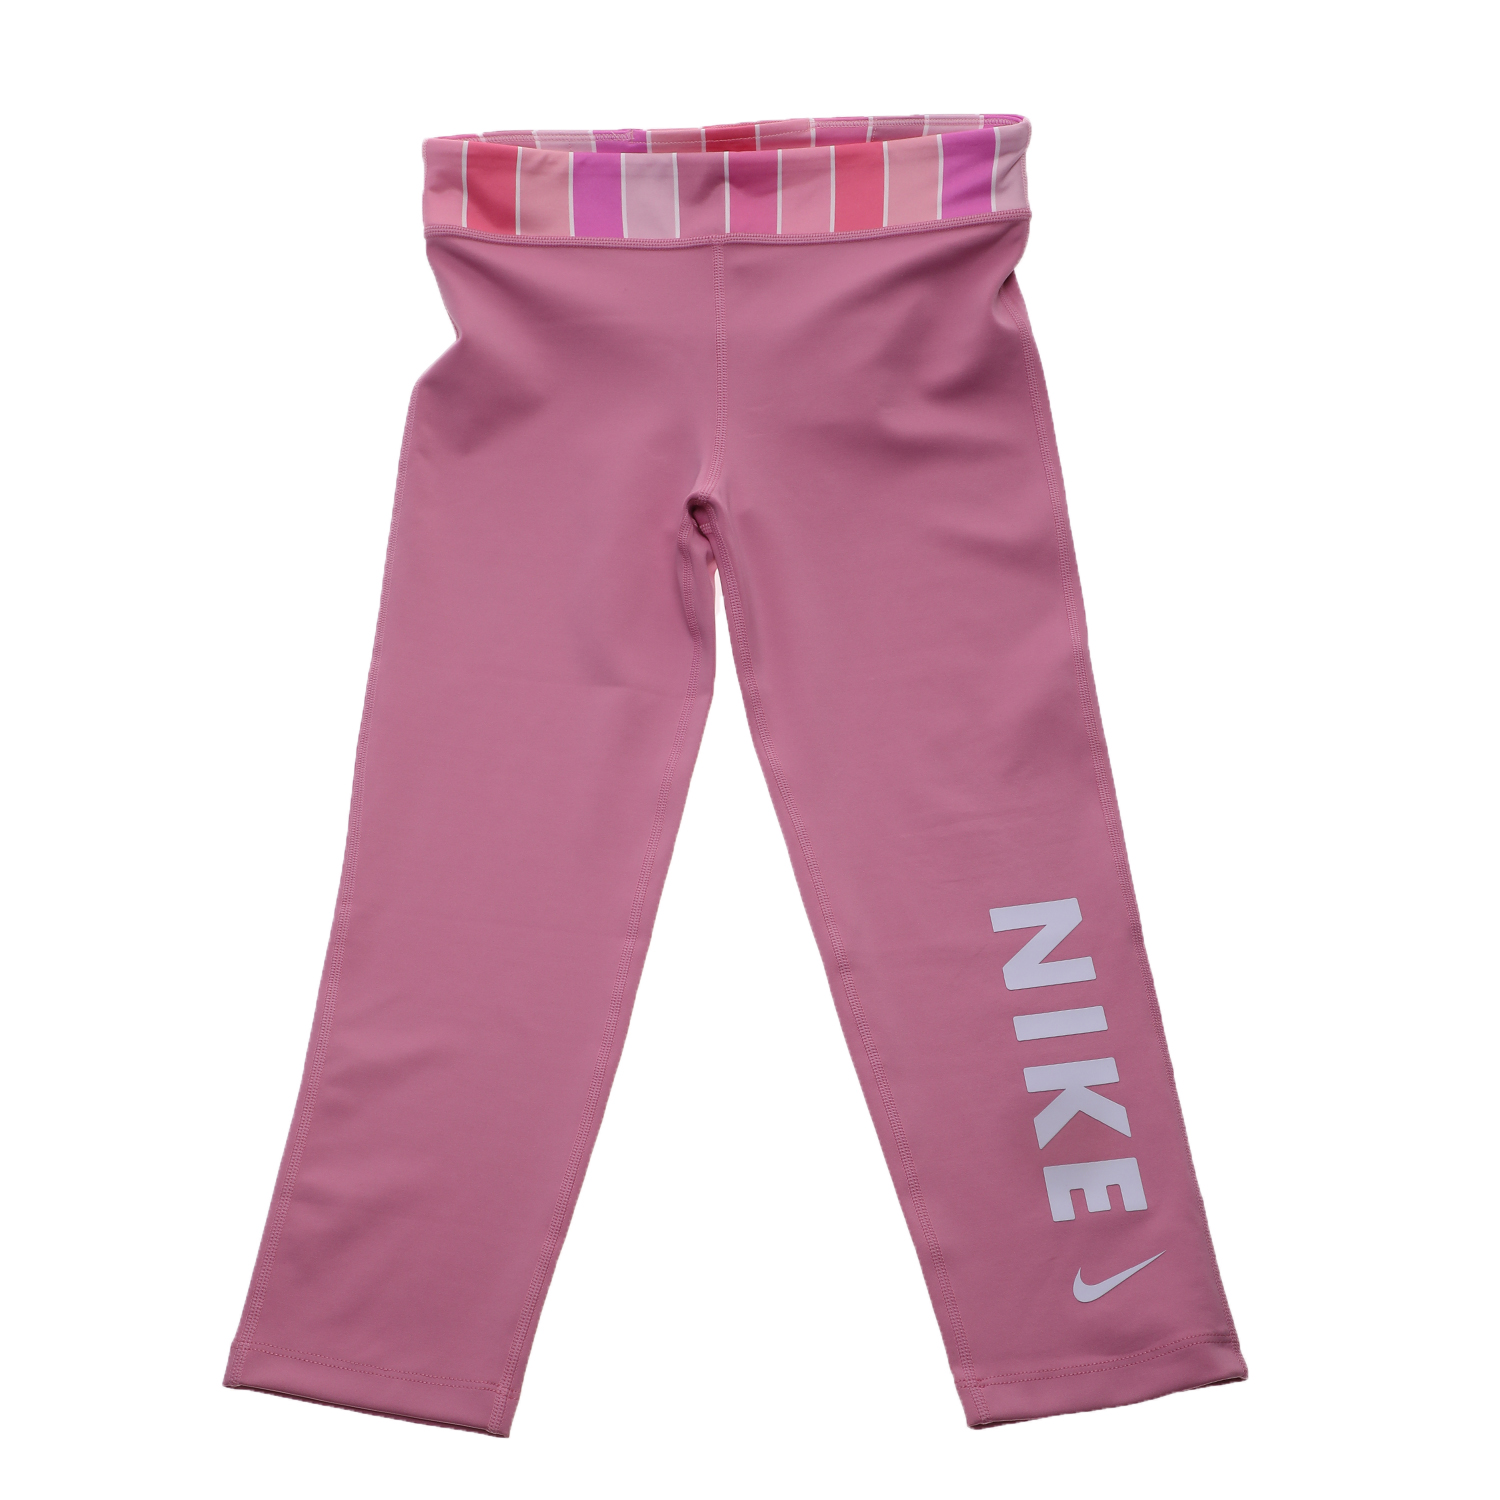 Παιδικά/Girls/Ρούχα/Αθλητικά NIKE - Παιδικό κολάν NIKE ONE TIGHT CAPRI FB ροζ